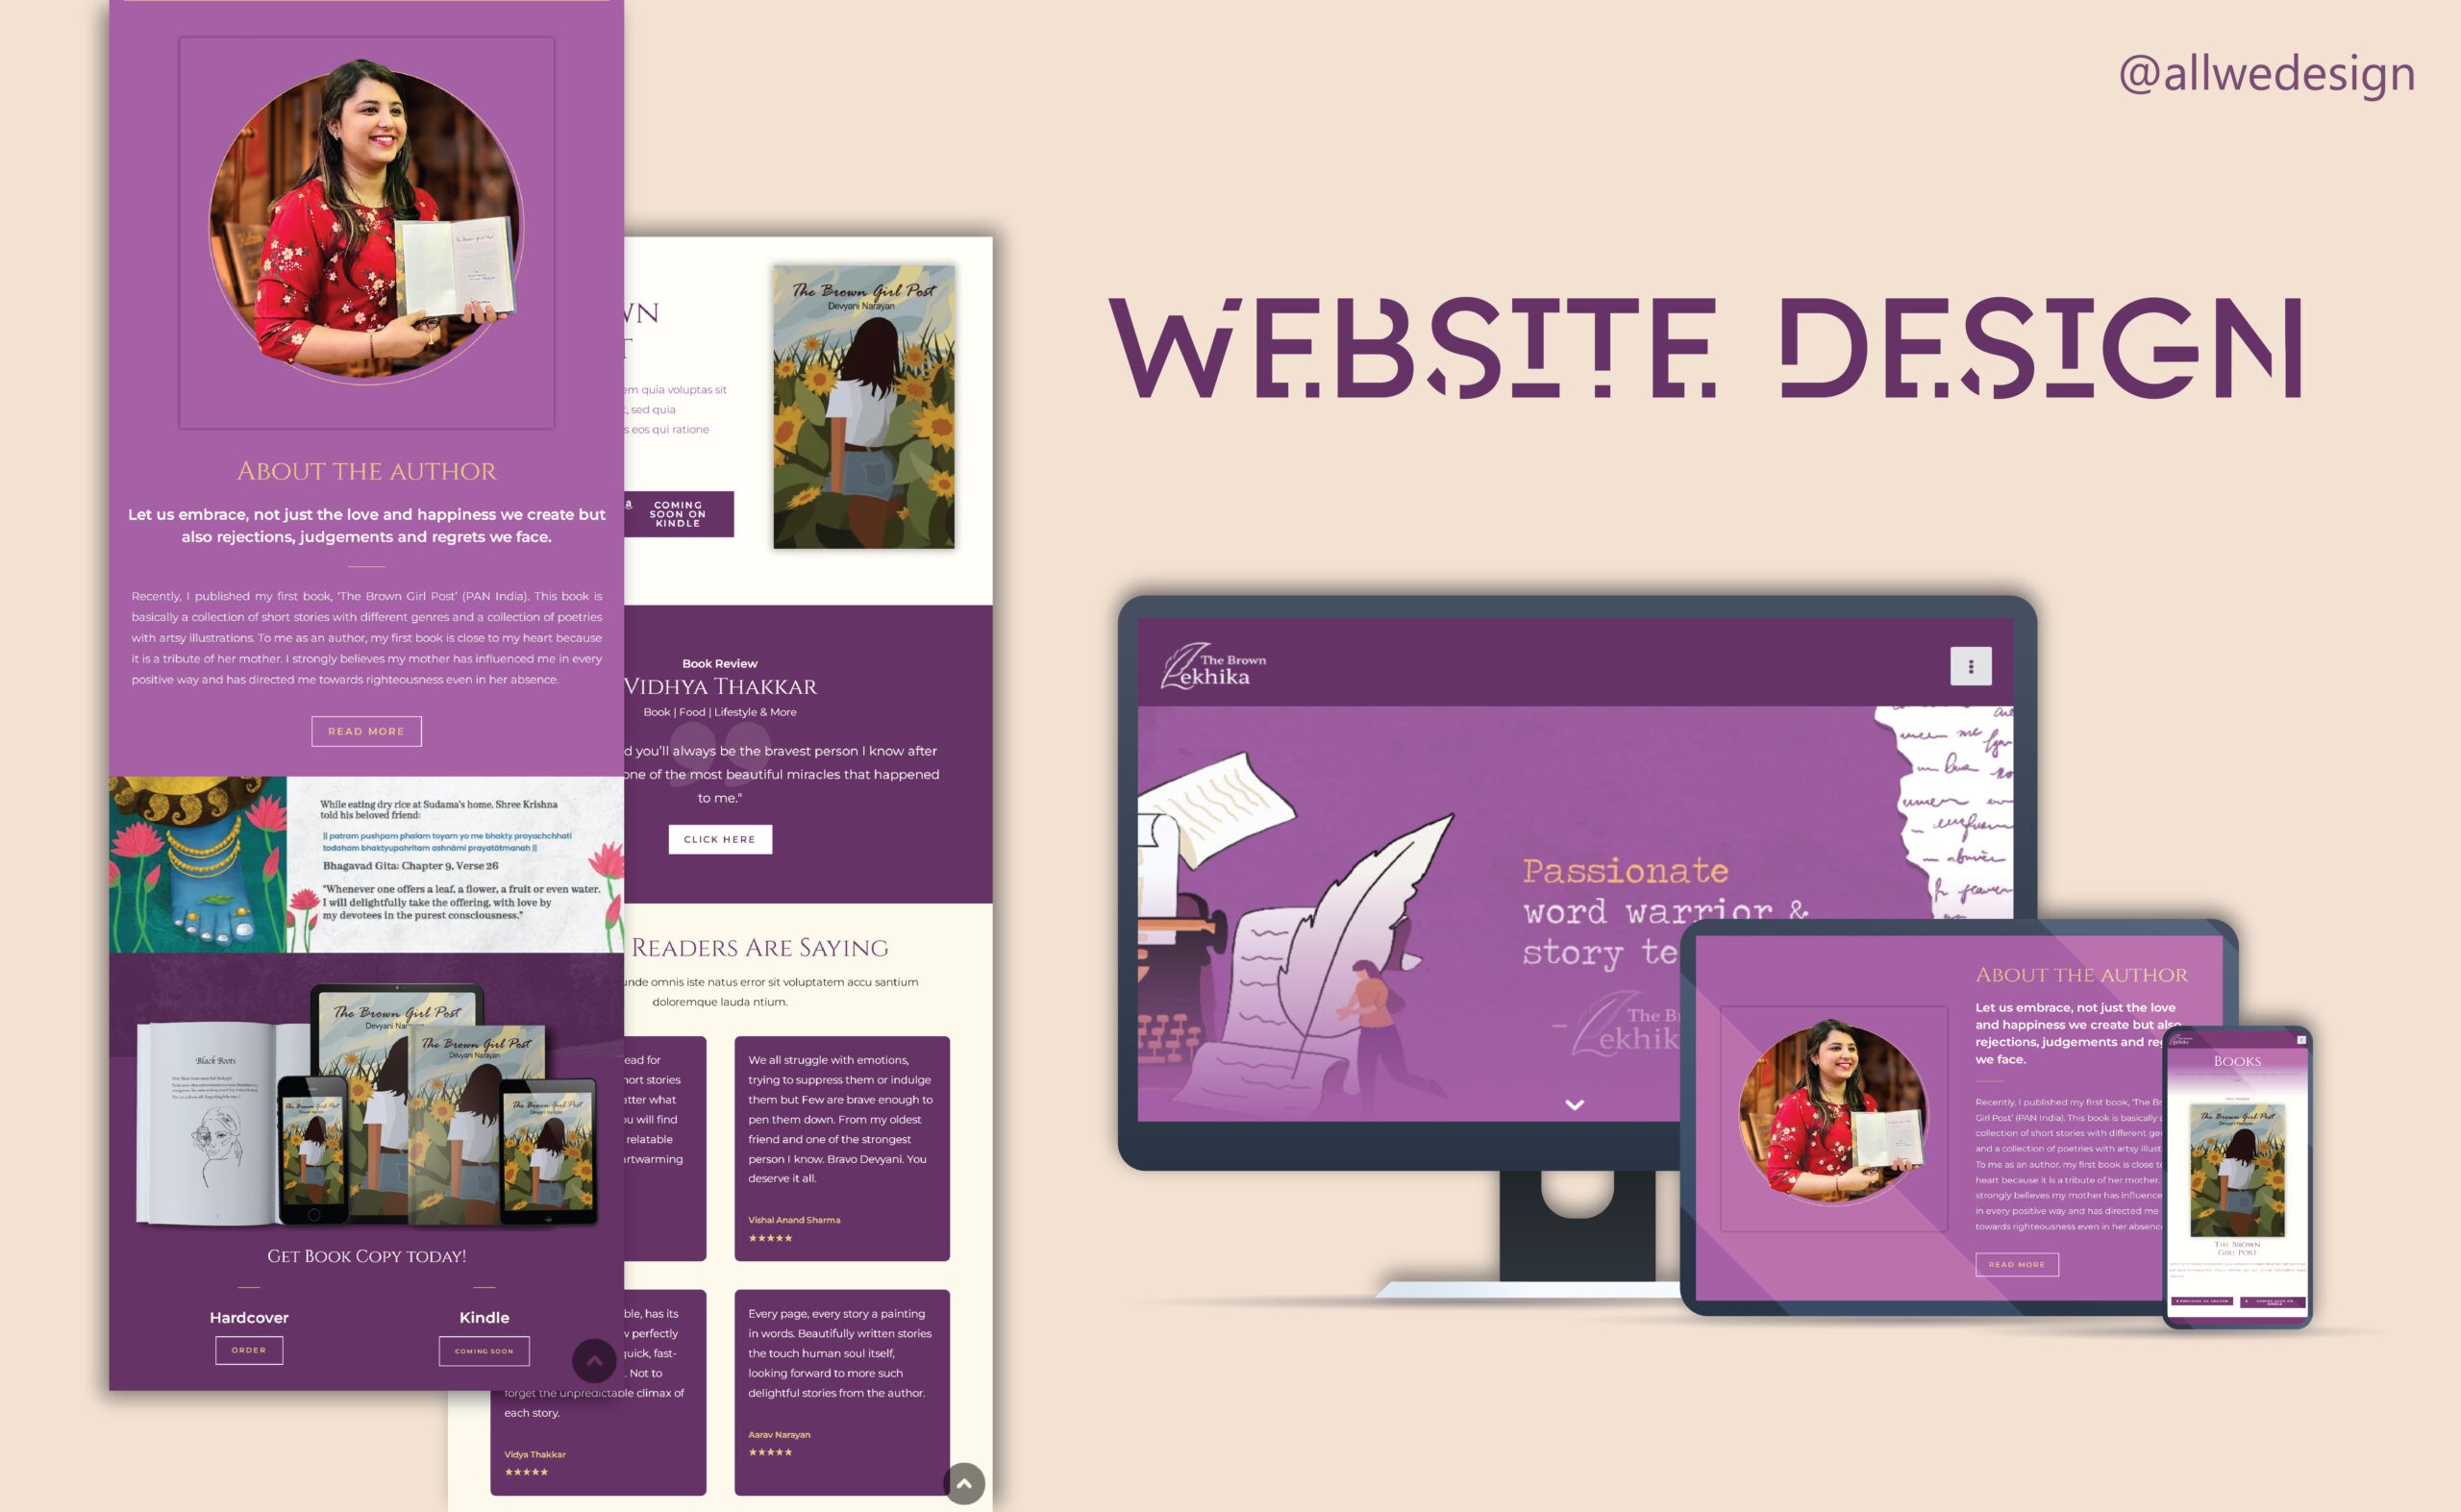 All We Design website design